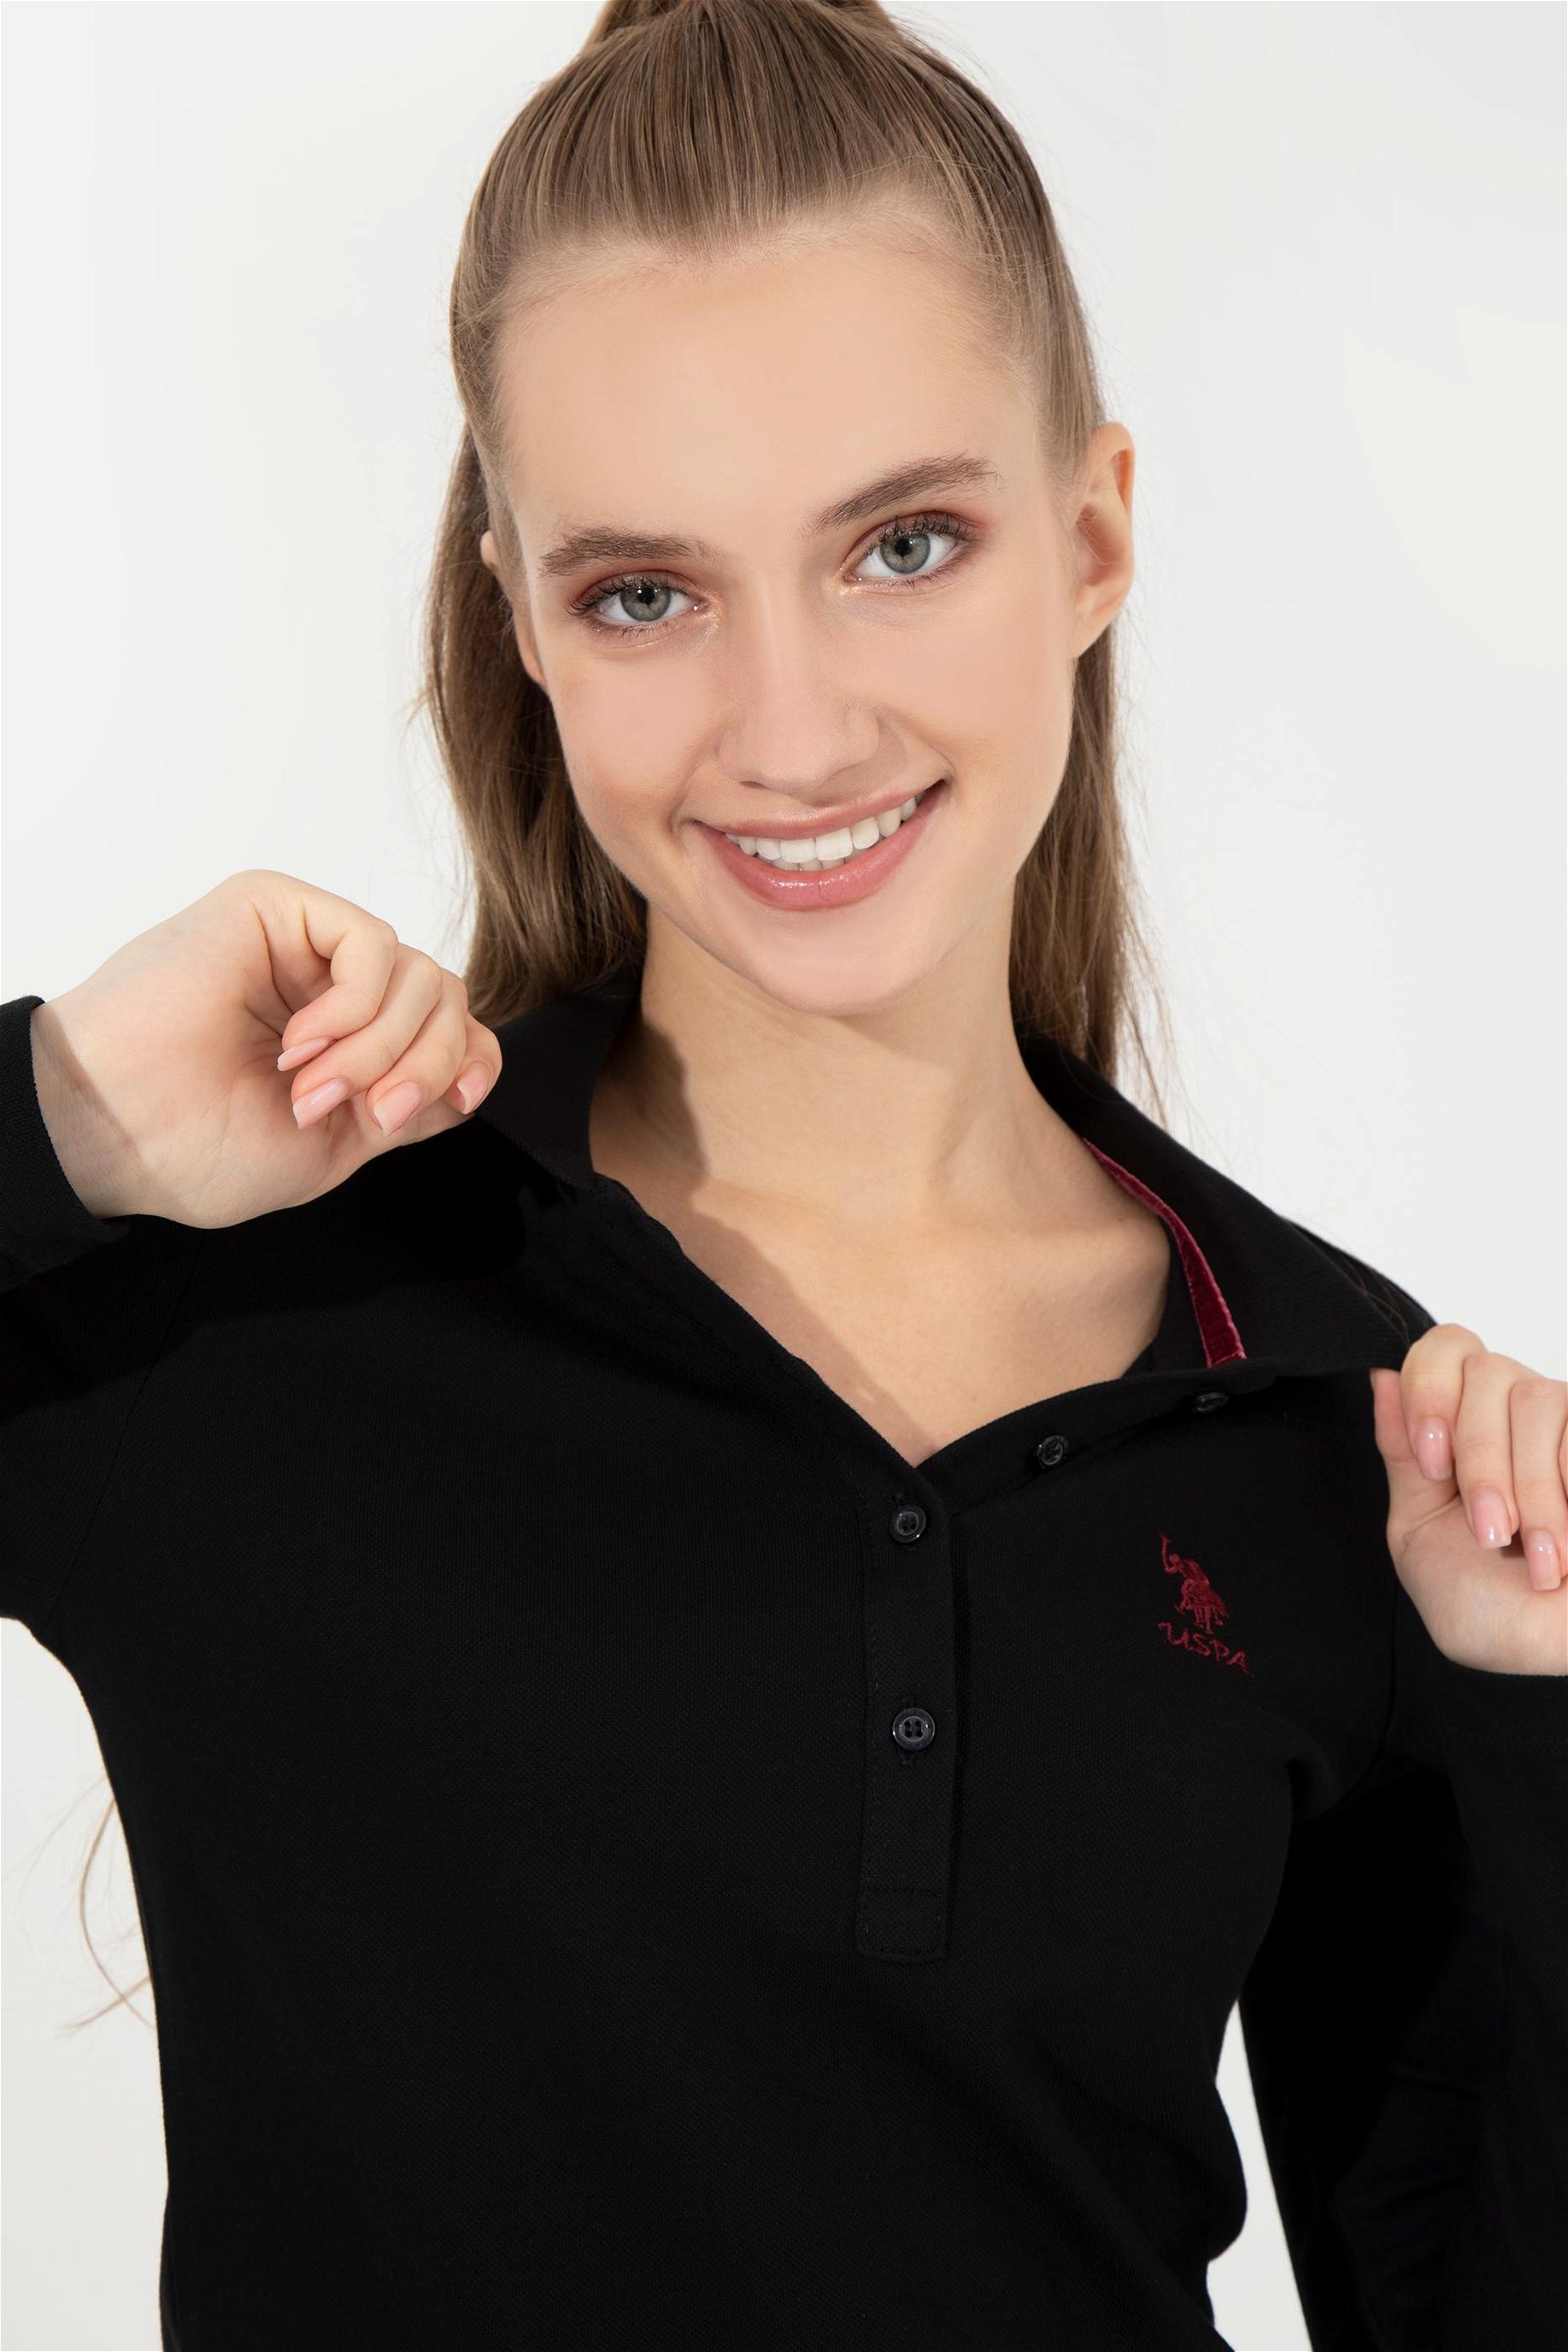 Kadın Siyah Polo Yaka Basic Sweatshirt